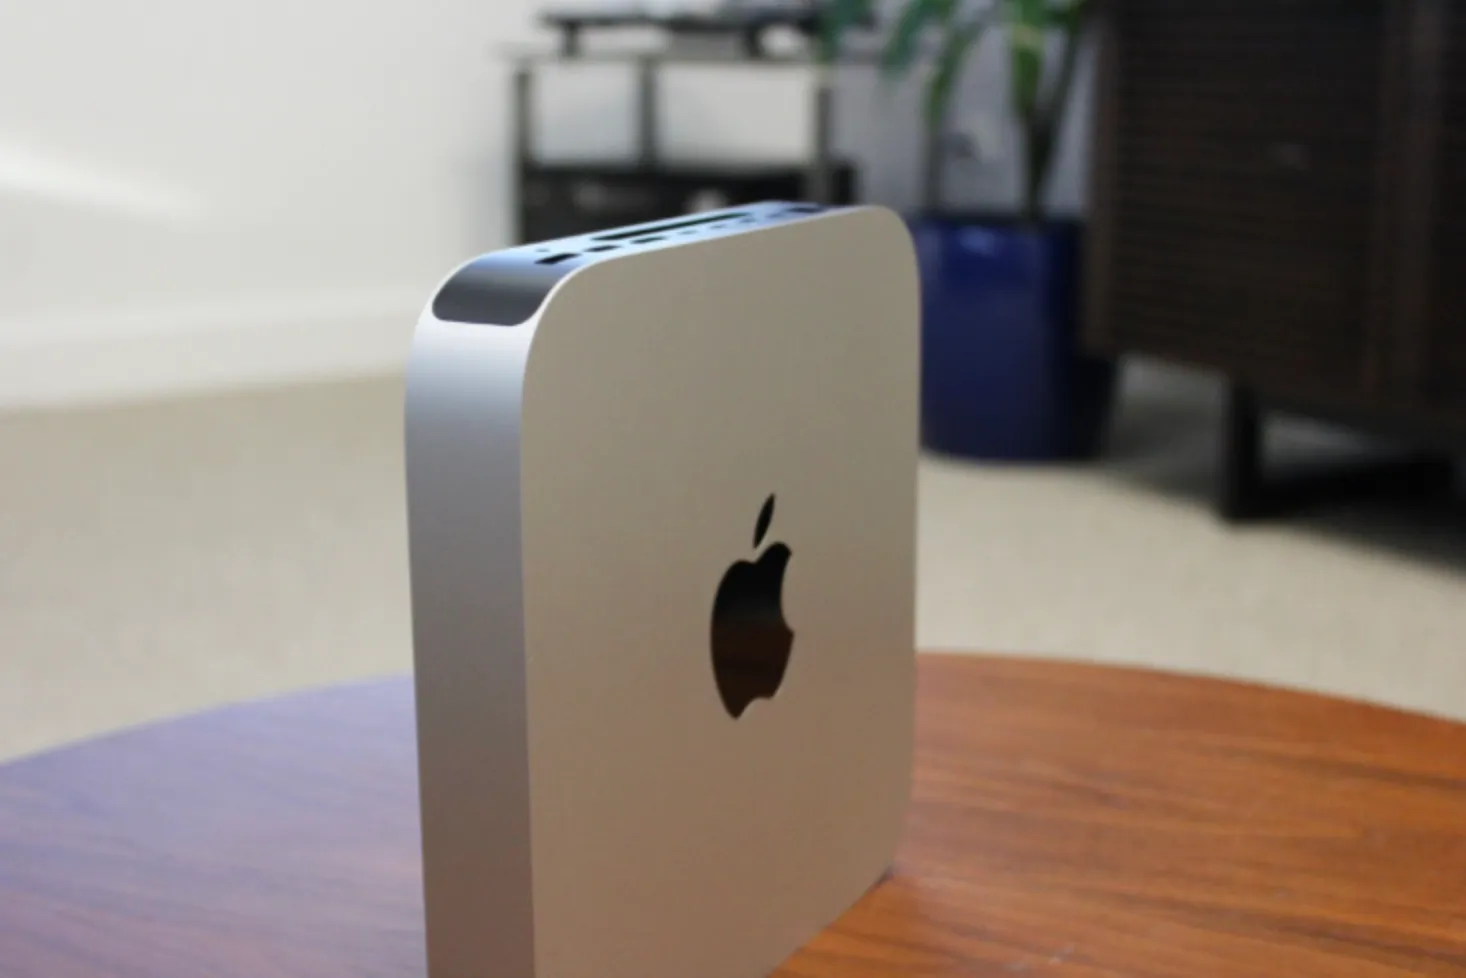 Mac Mini Design